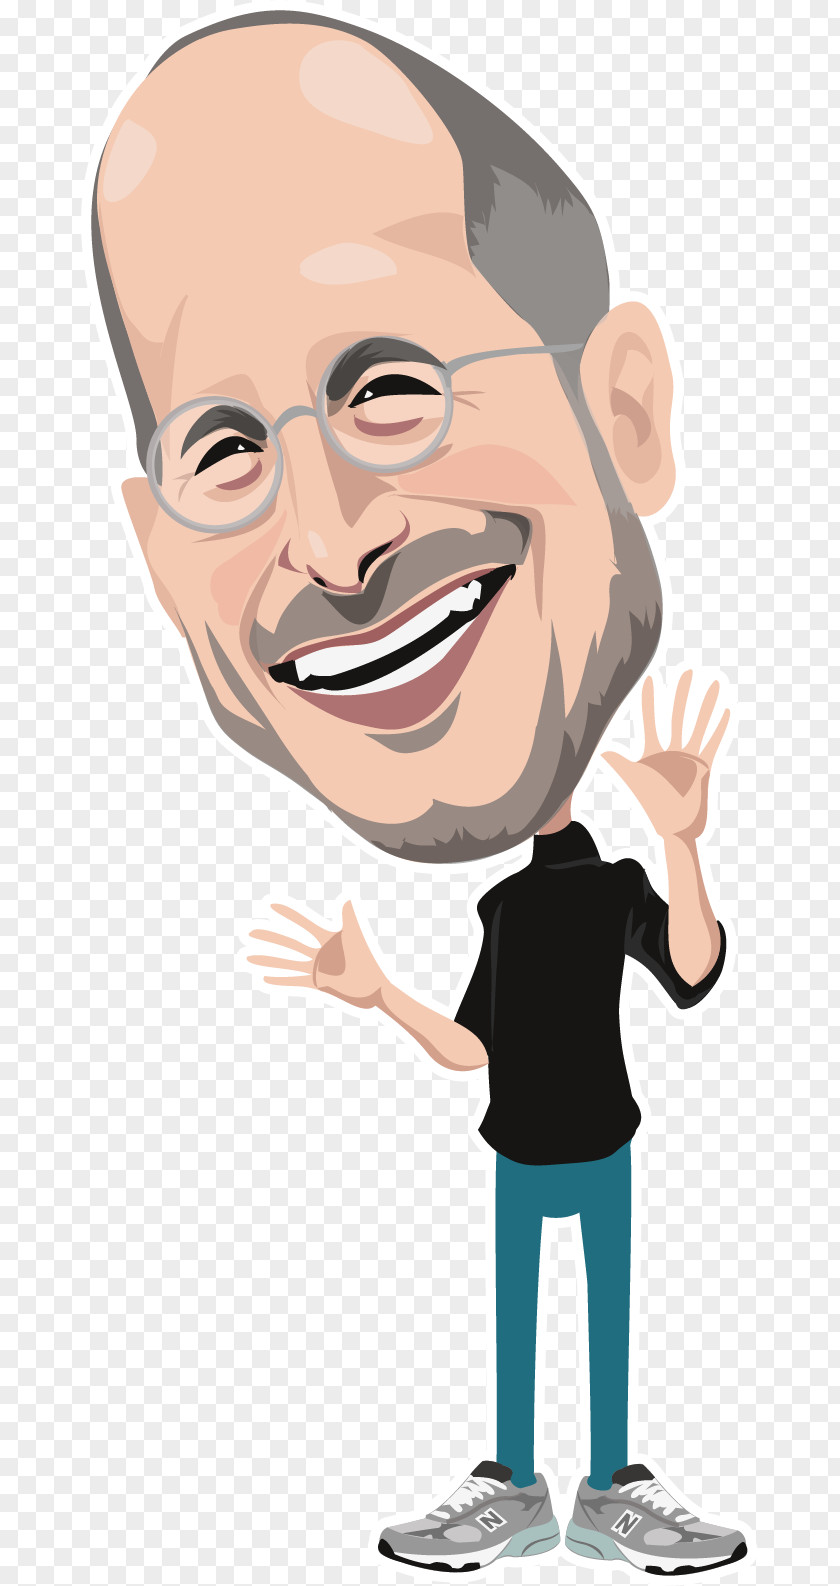 Steve Jobs Apple Cartoon Facial Expression Clip Art PNG